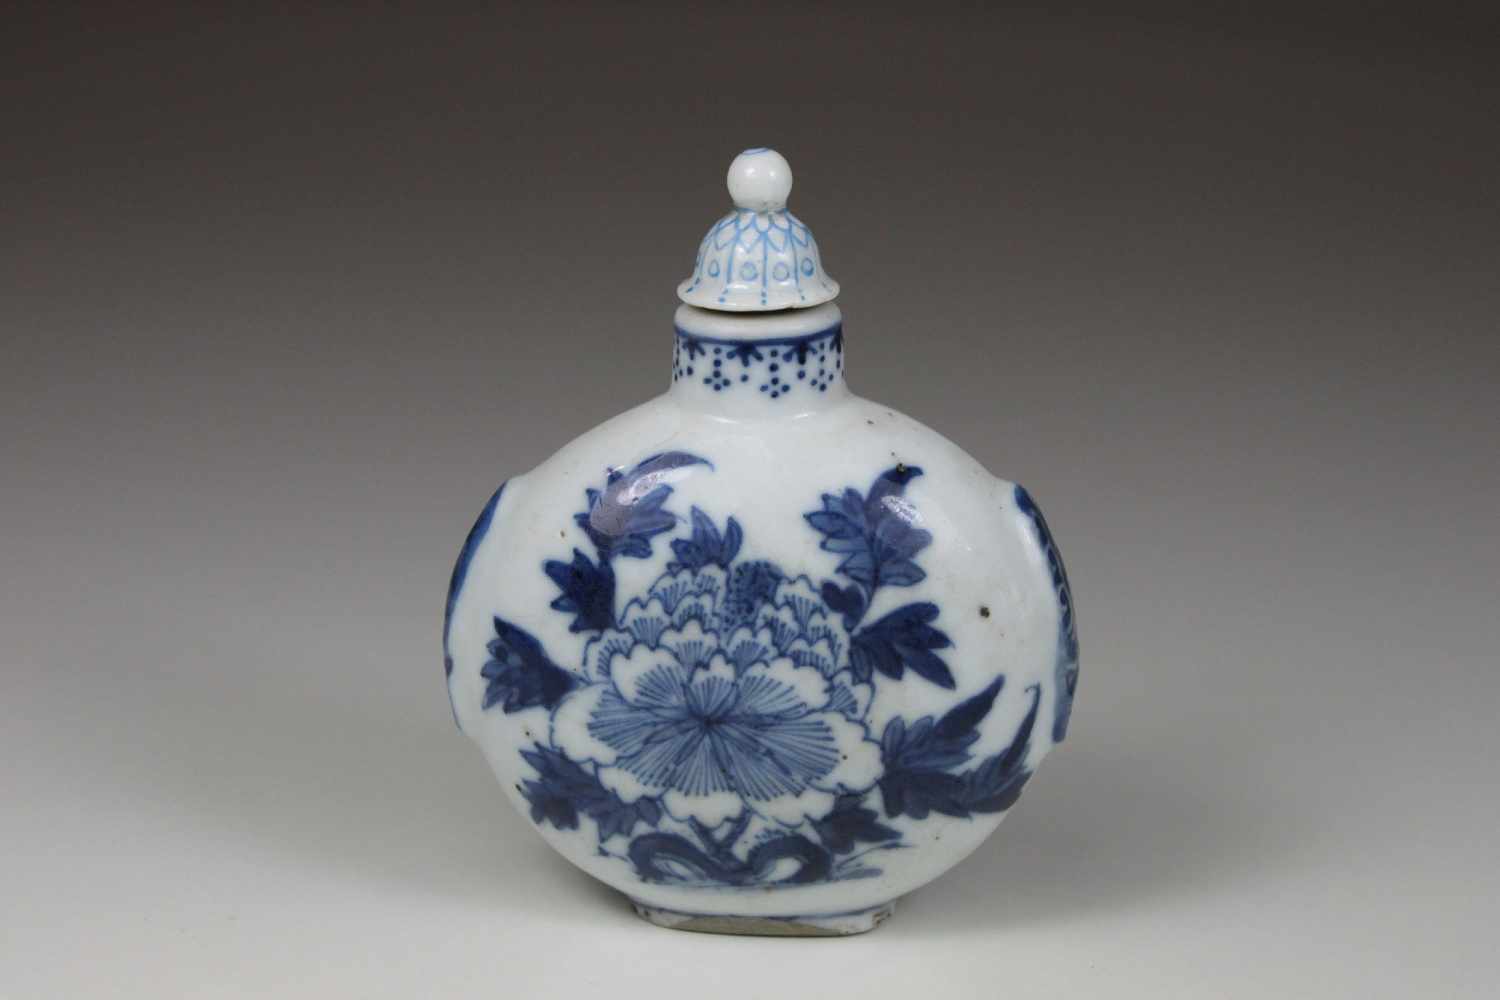 Snuffbottle, China, vier Zeichen unter Glasur, blau staffiert, H.: 9 cm, B.: 7 cm, am Stand